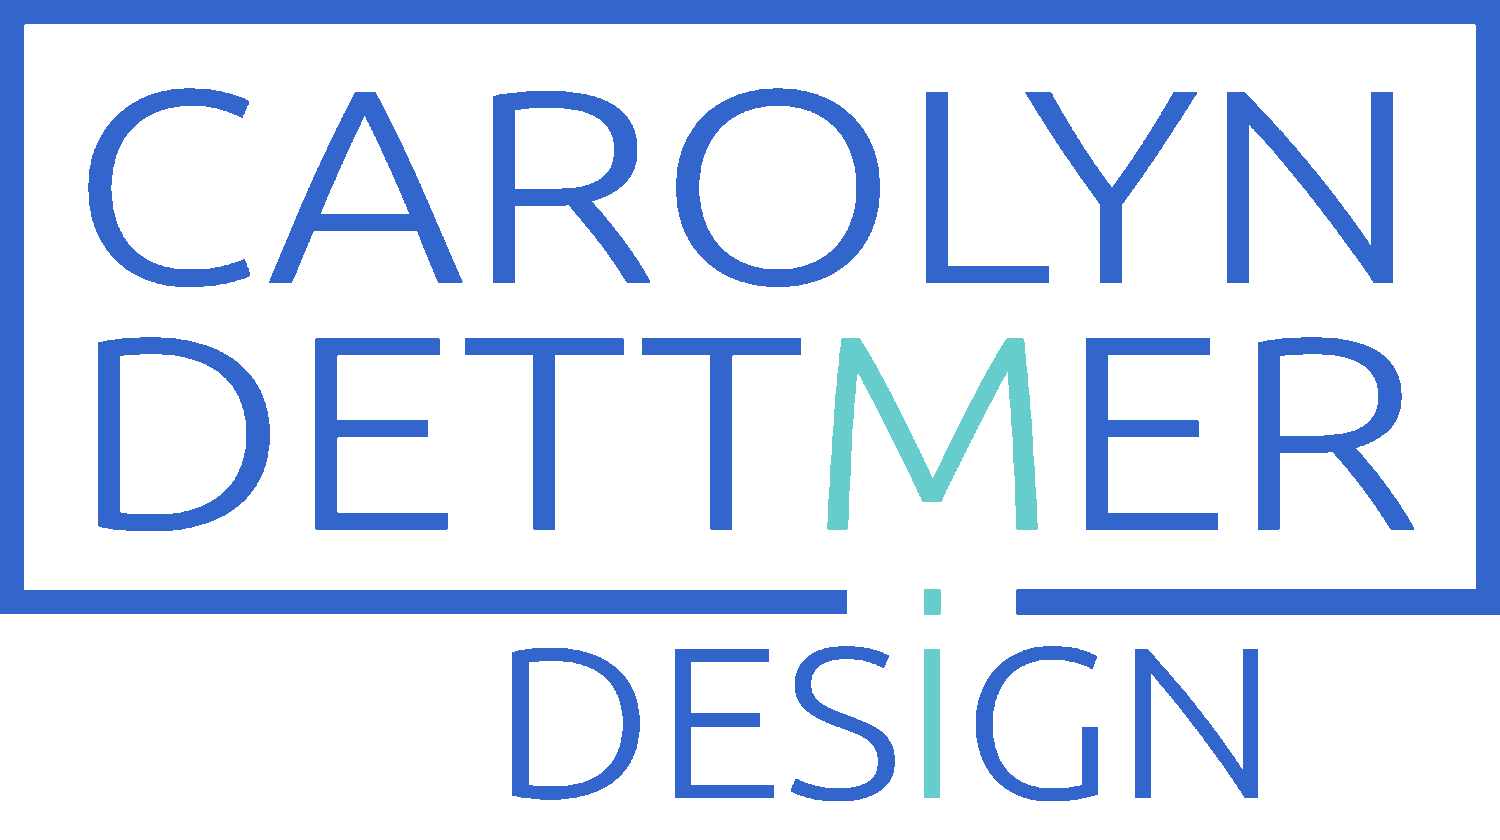 Carolyn Dettmer Design